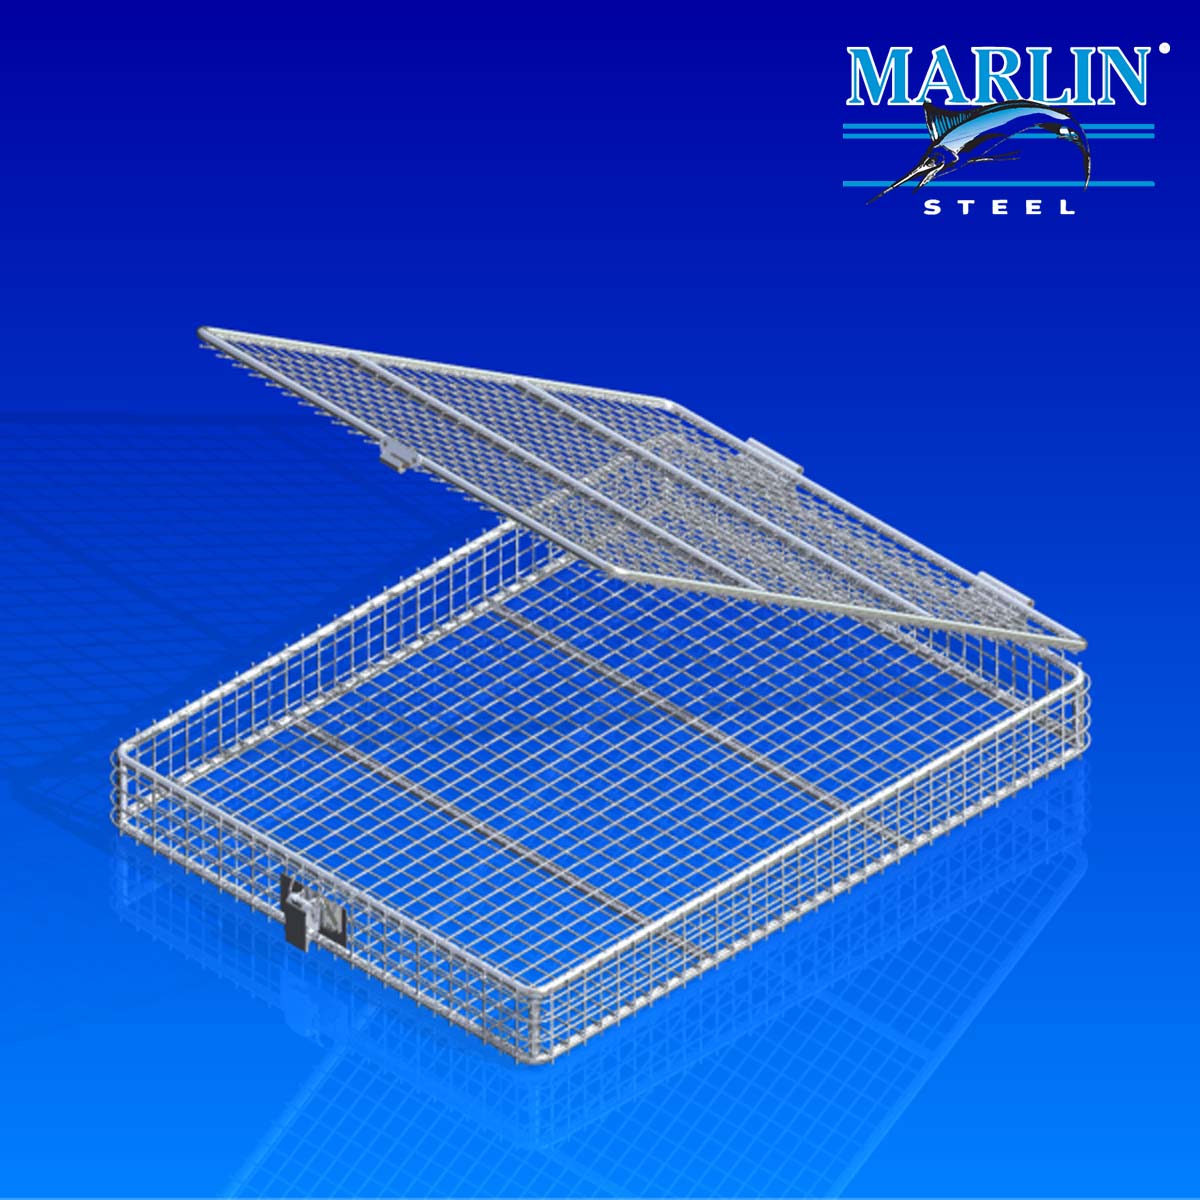 Marlin Steel wire baskets with lids 789001.jpg